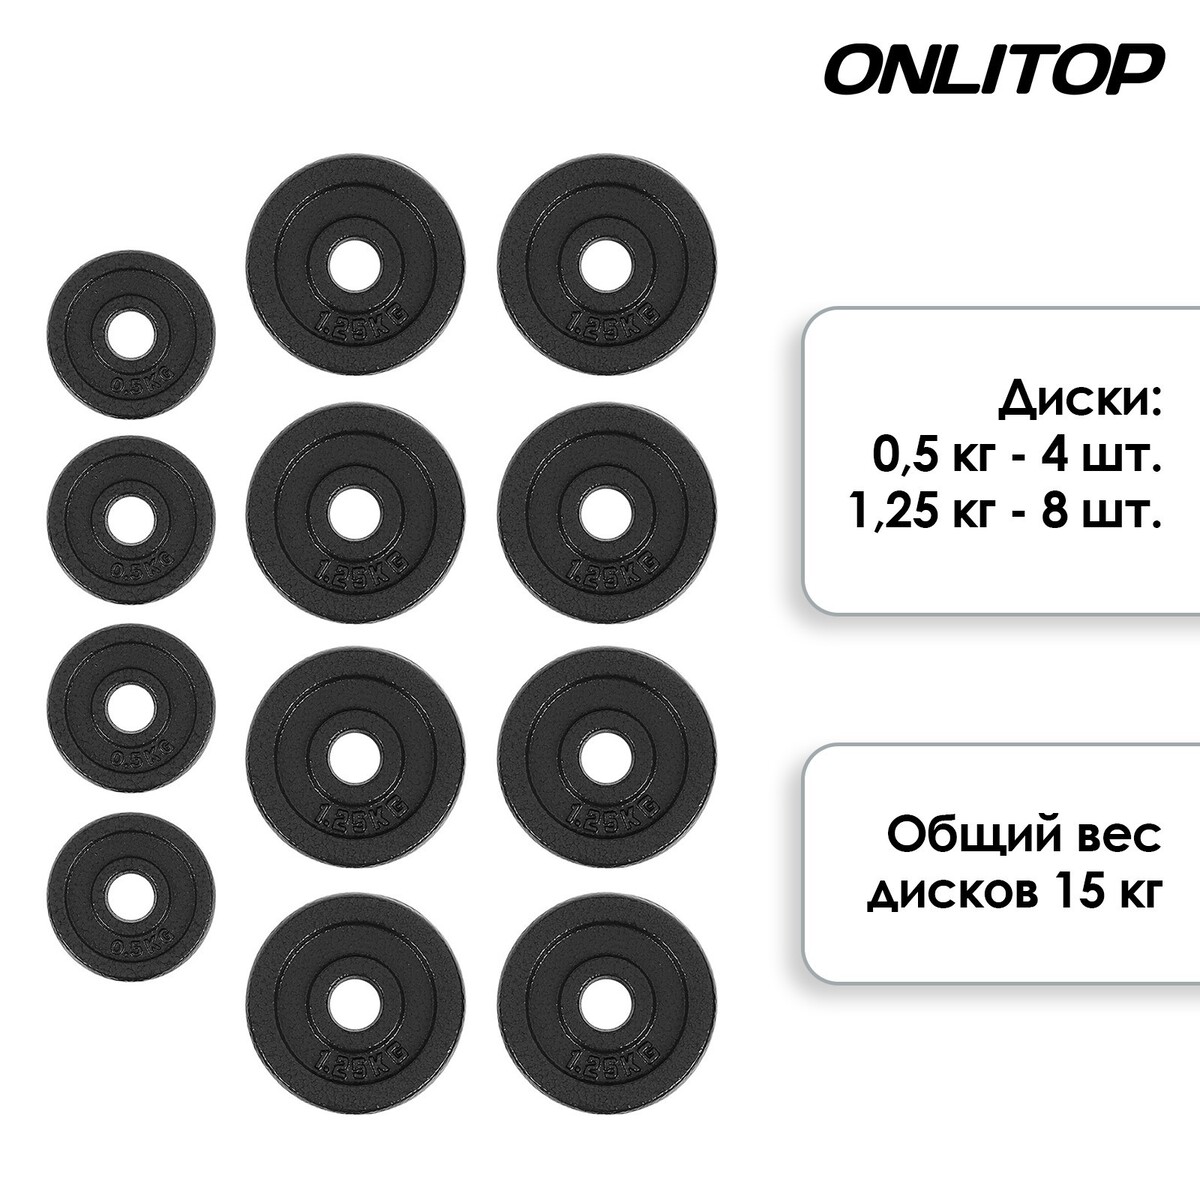 фото Набор onlytop: 2 гантельных грифа 35 см, 12 дисков, 4 замка, вес 15 кг